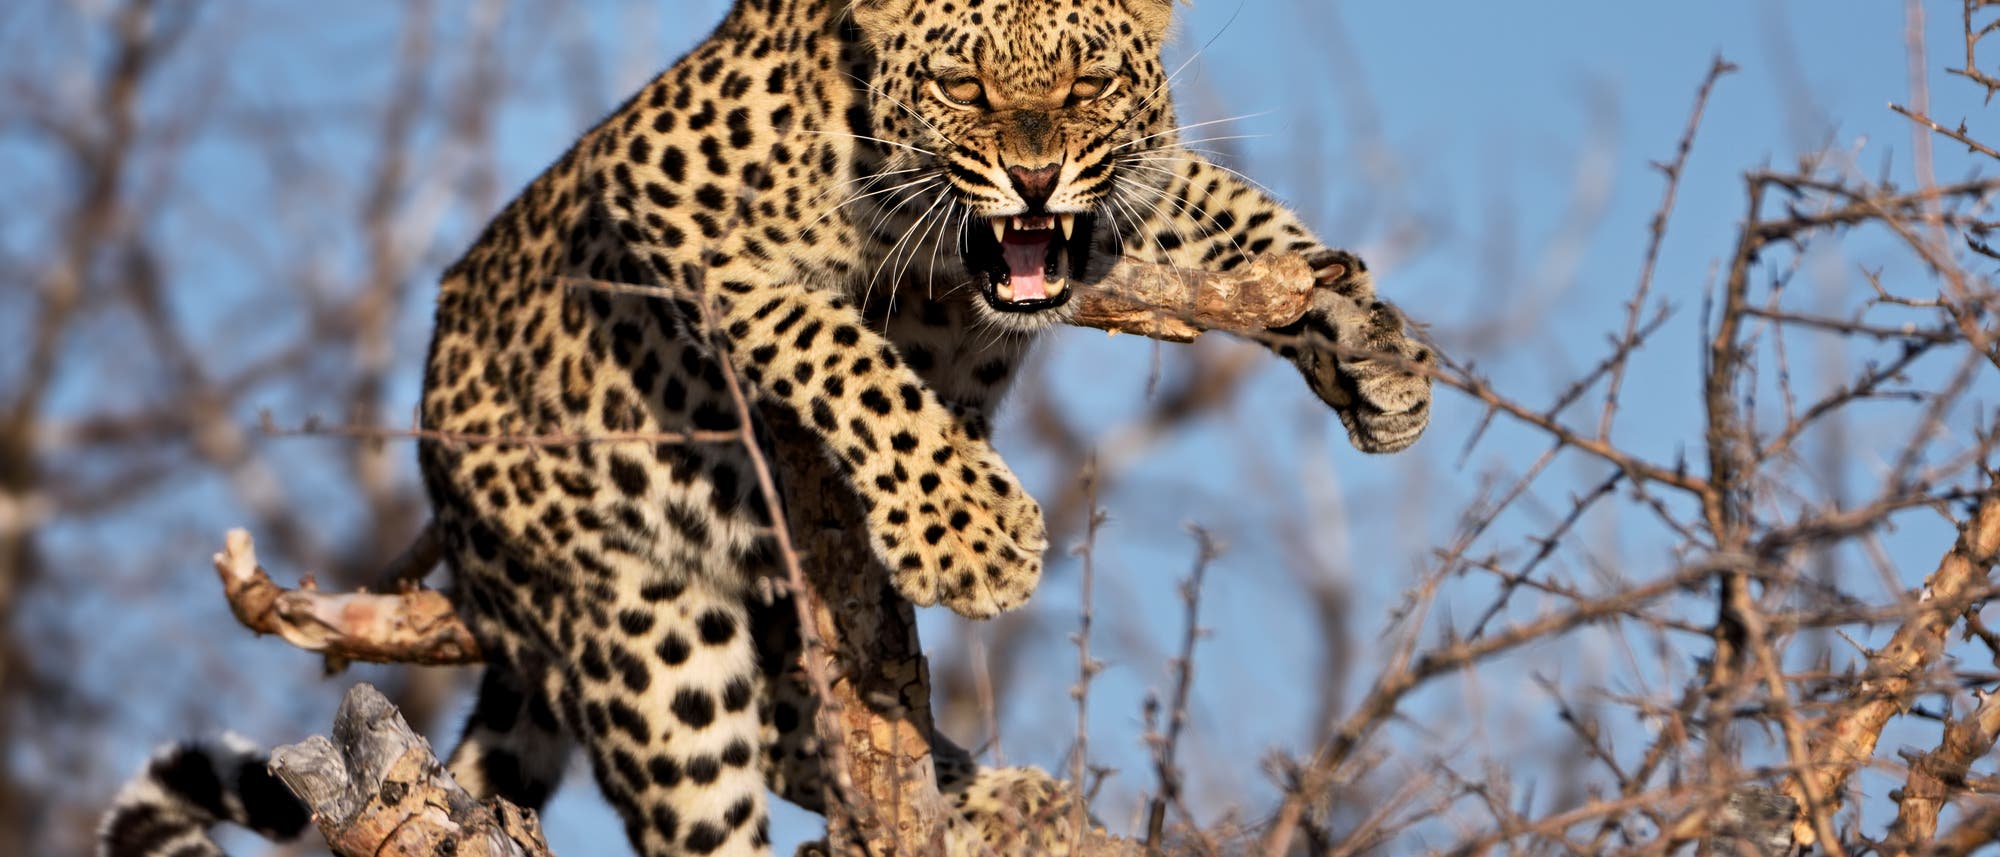 Fauchender Leopard in einem Baum (Symbolbild)